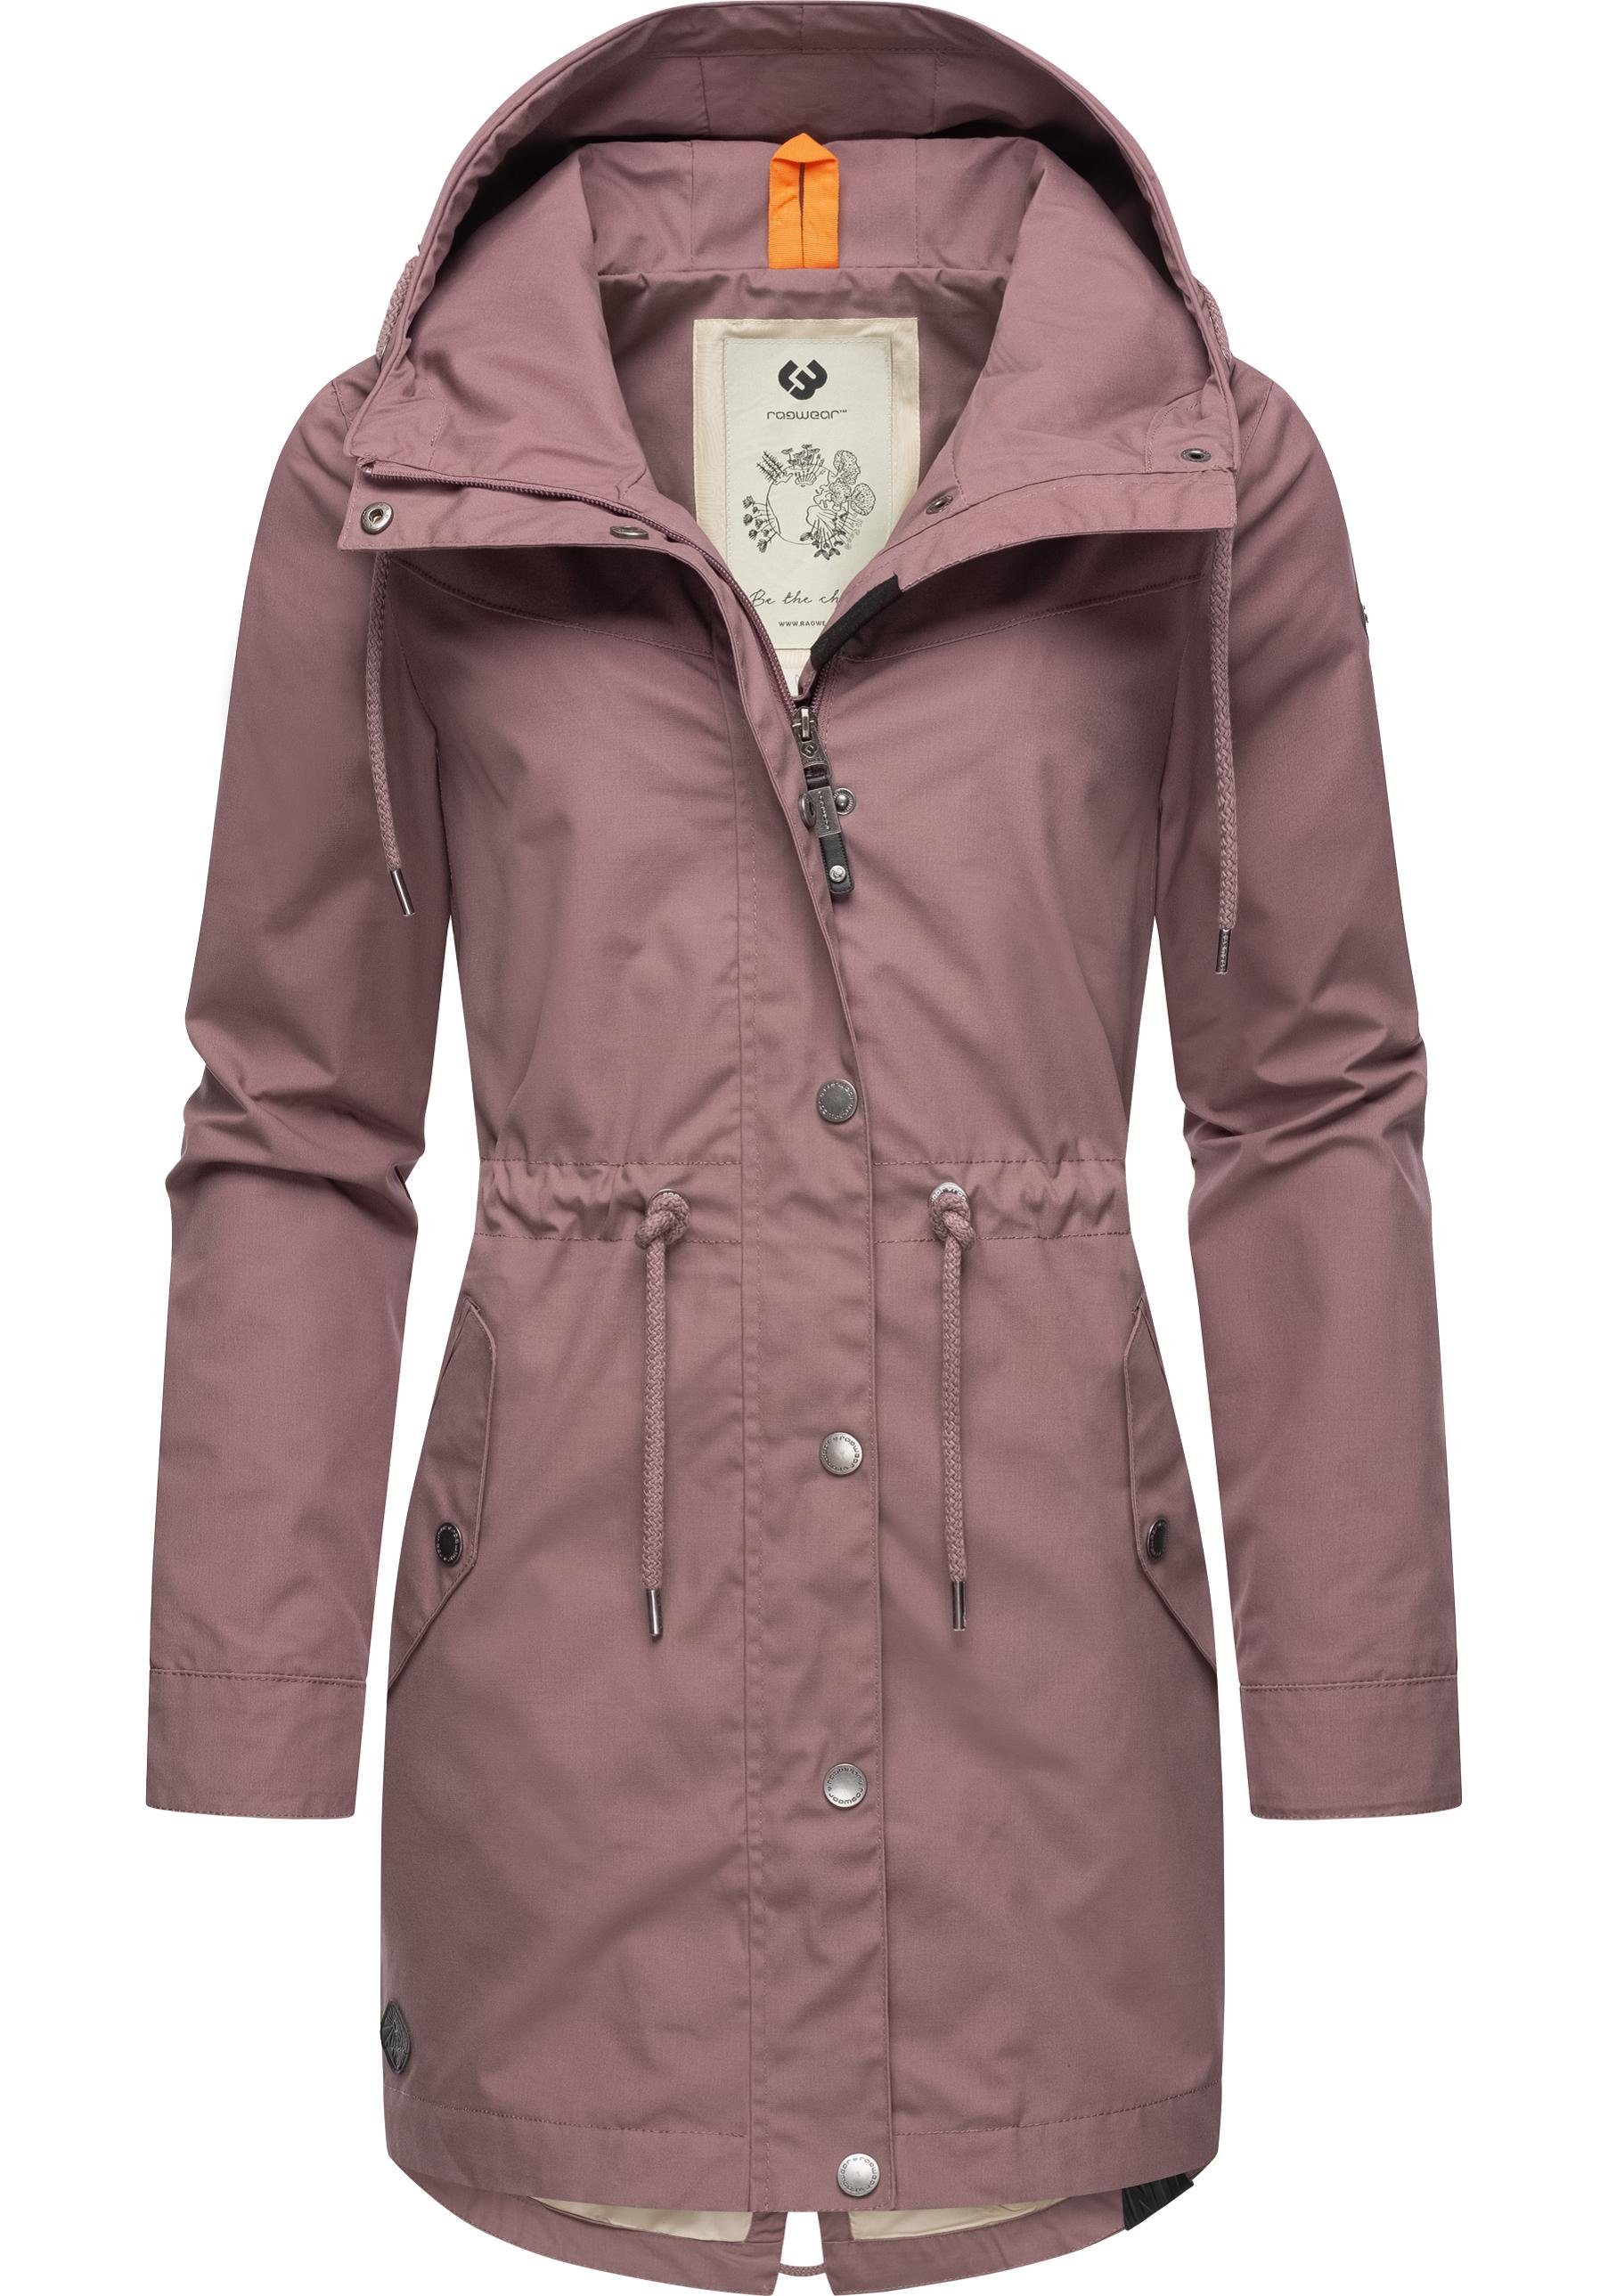 Jacken Damen für Rosa Ragwear kaufen online | OTTO